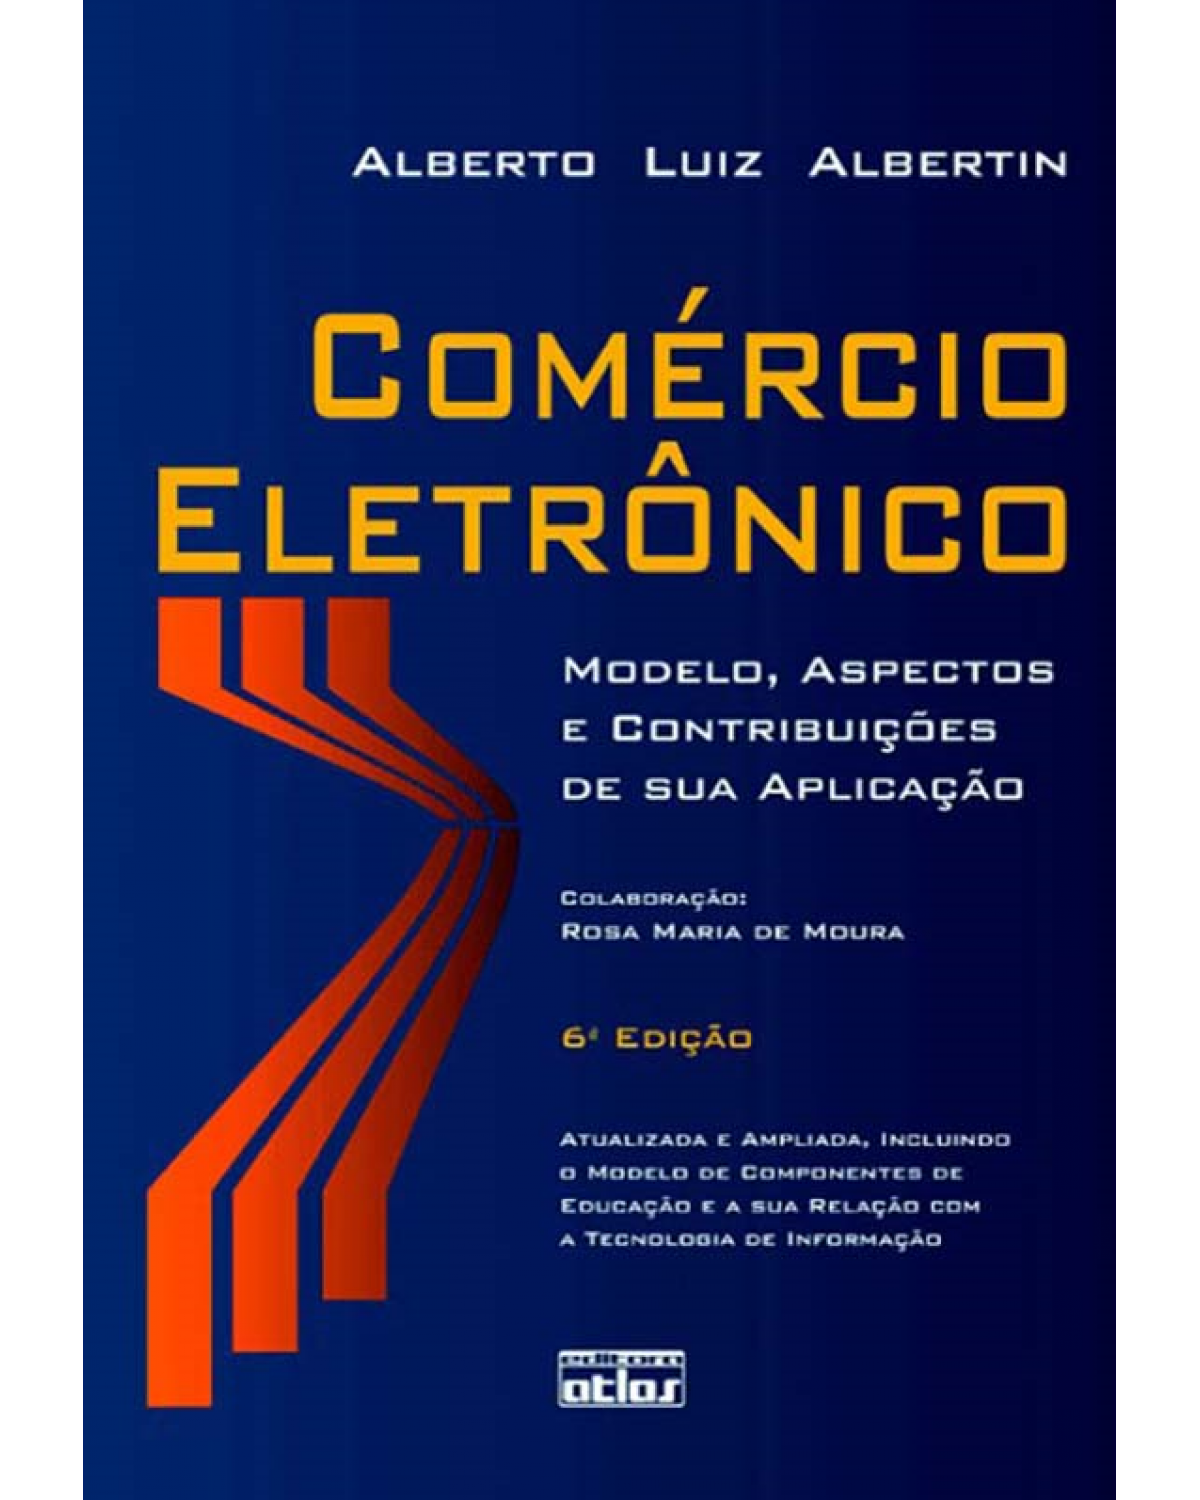 Comércio eletrônico - Modelo, aspectos e contribuições de sua aplicação - 6ª Edição | 2010